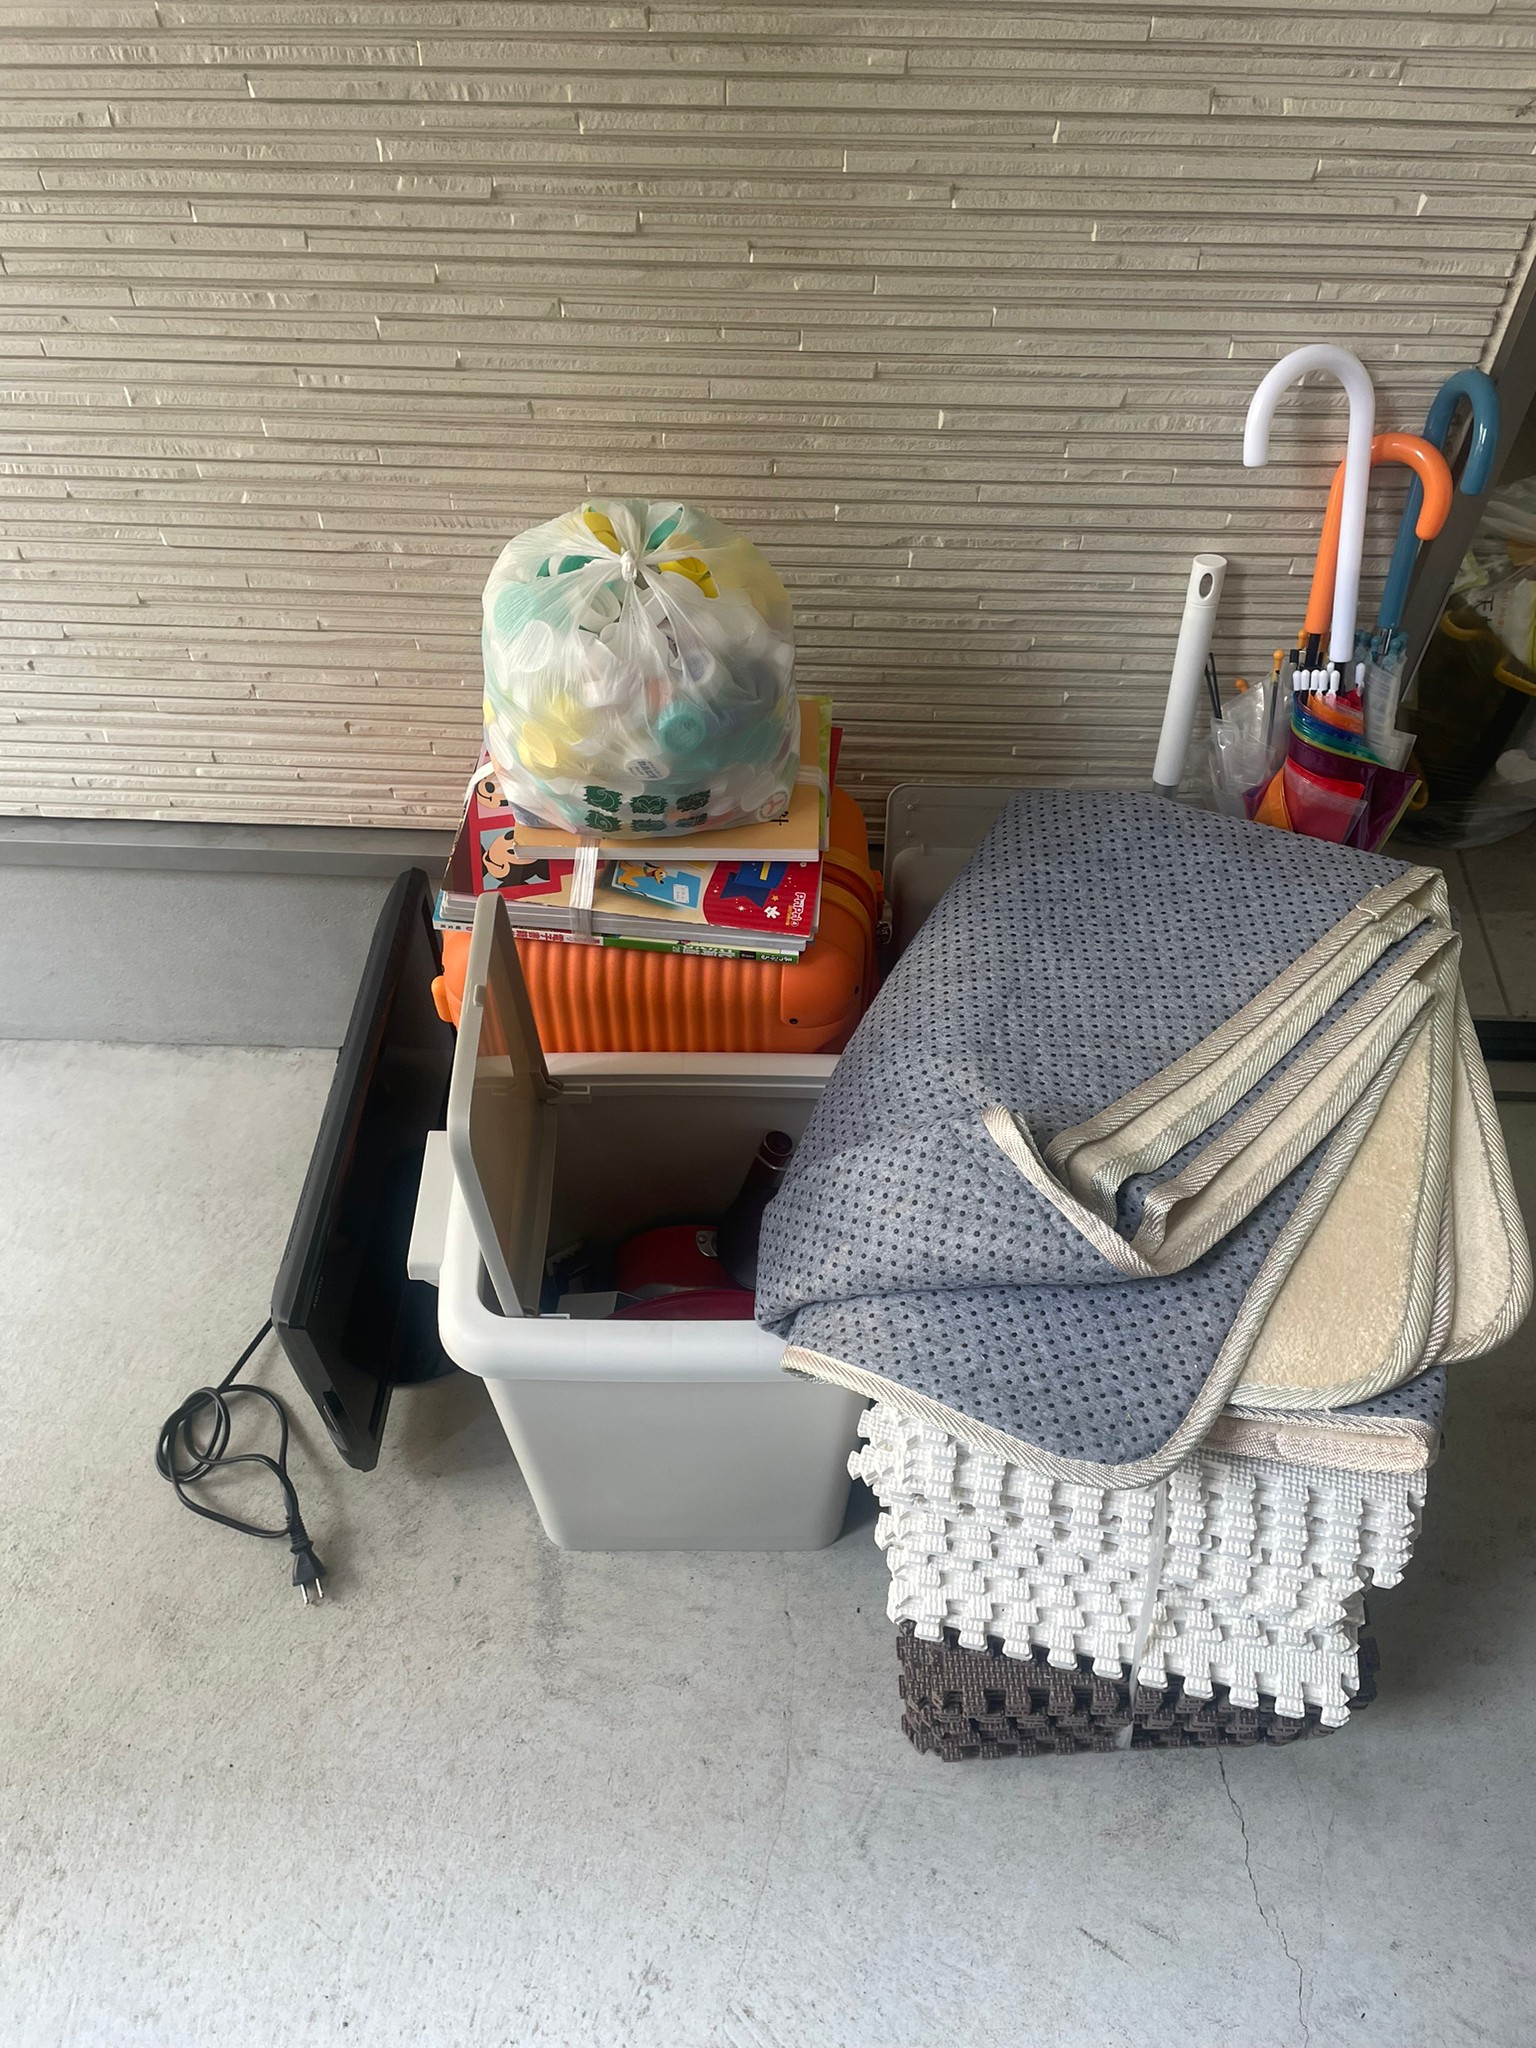 絵本、テレビ、プレイマット、傘、ゴミ箱、ペットボトルキャップの回収前の状態